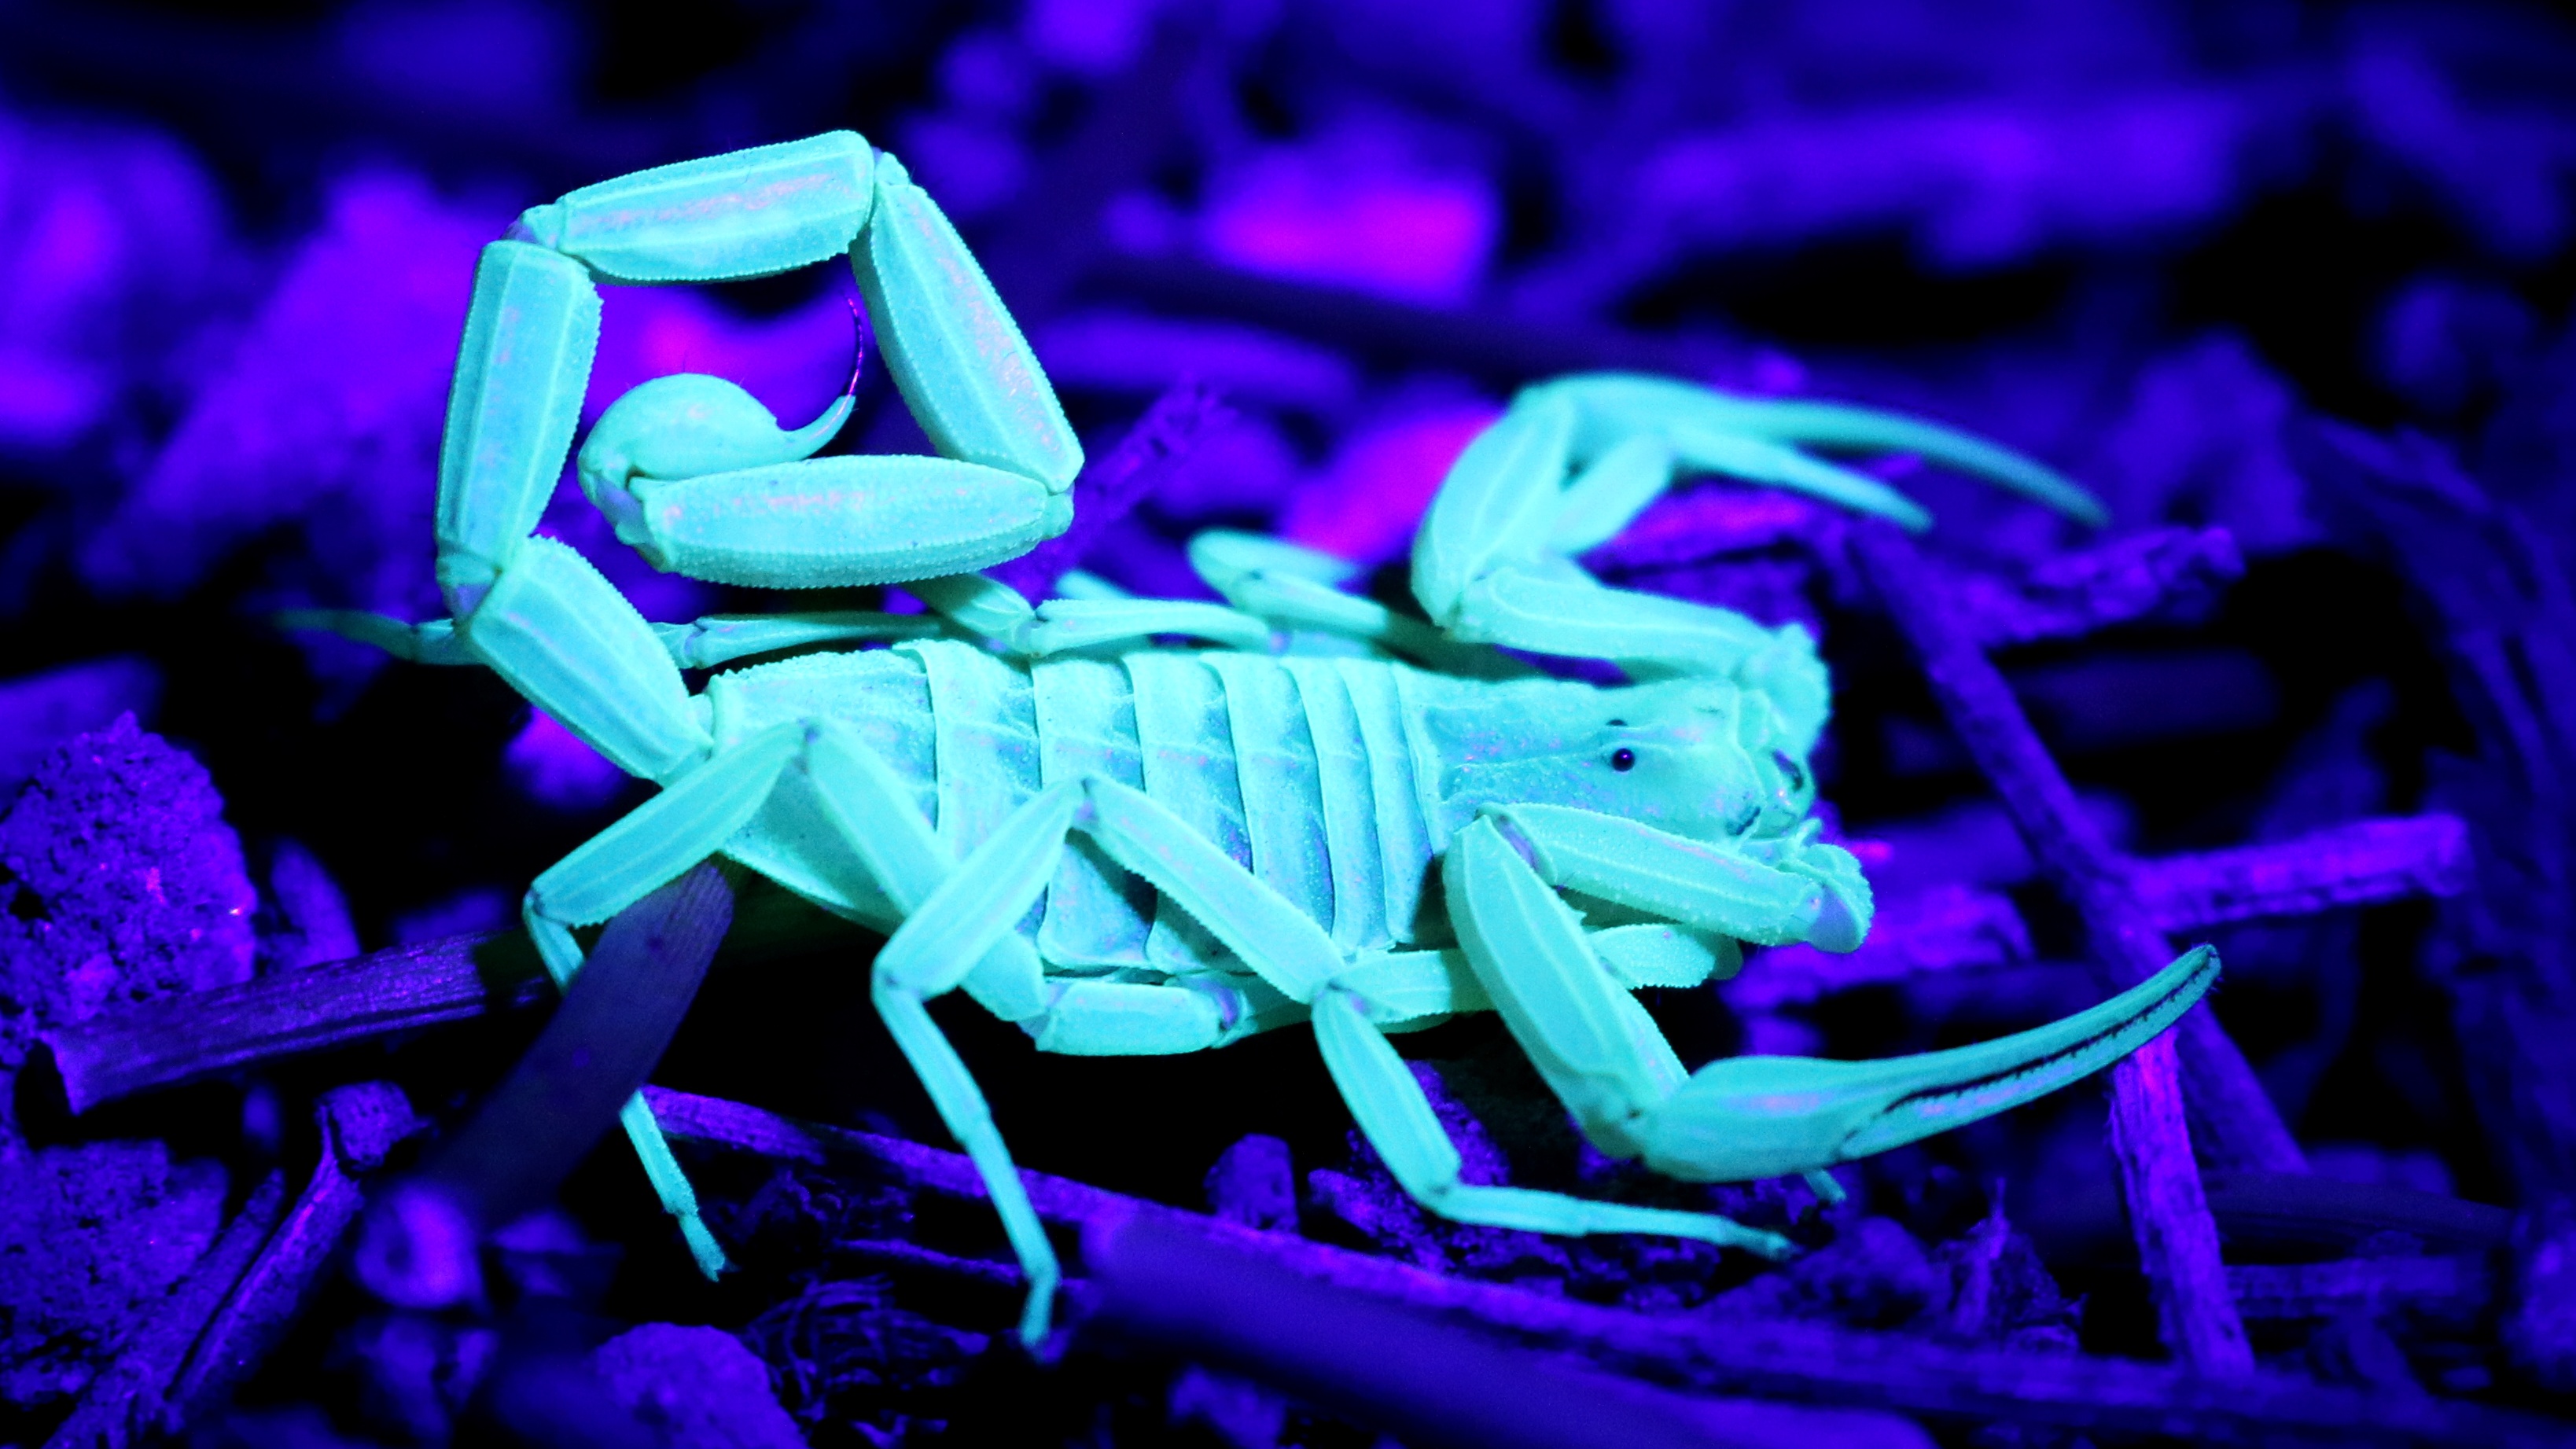 Glowing scorpion photo